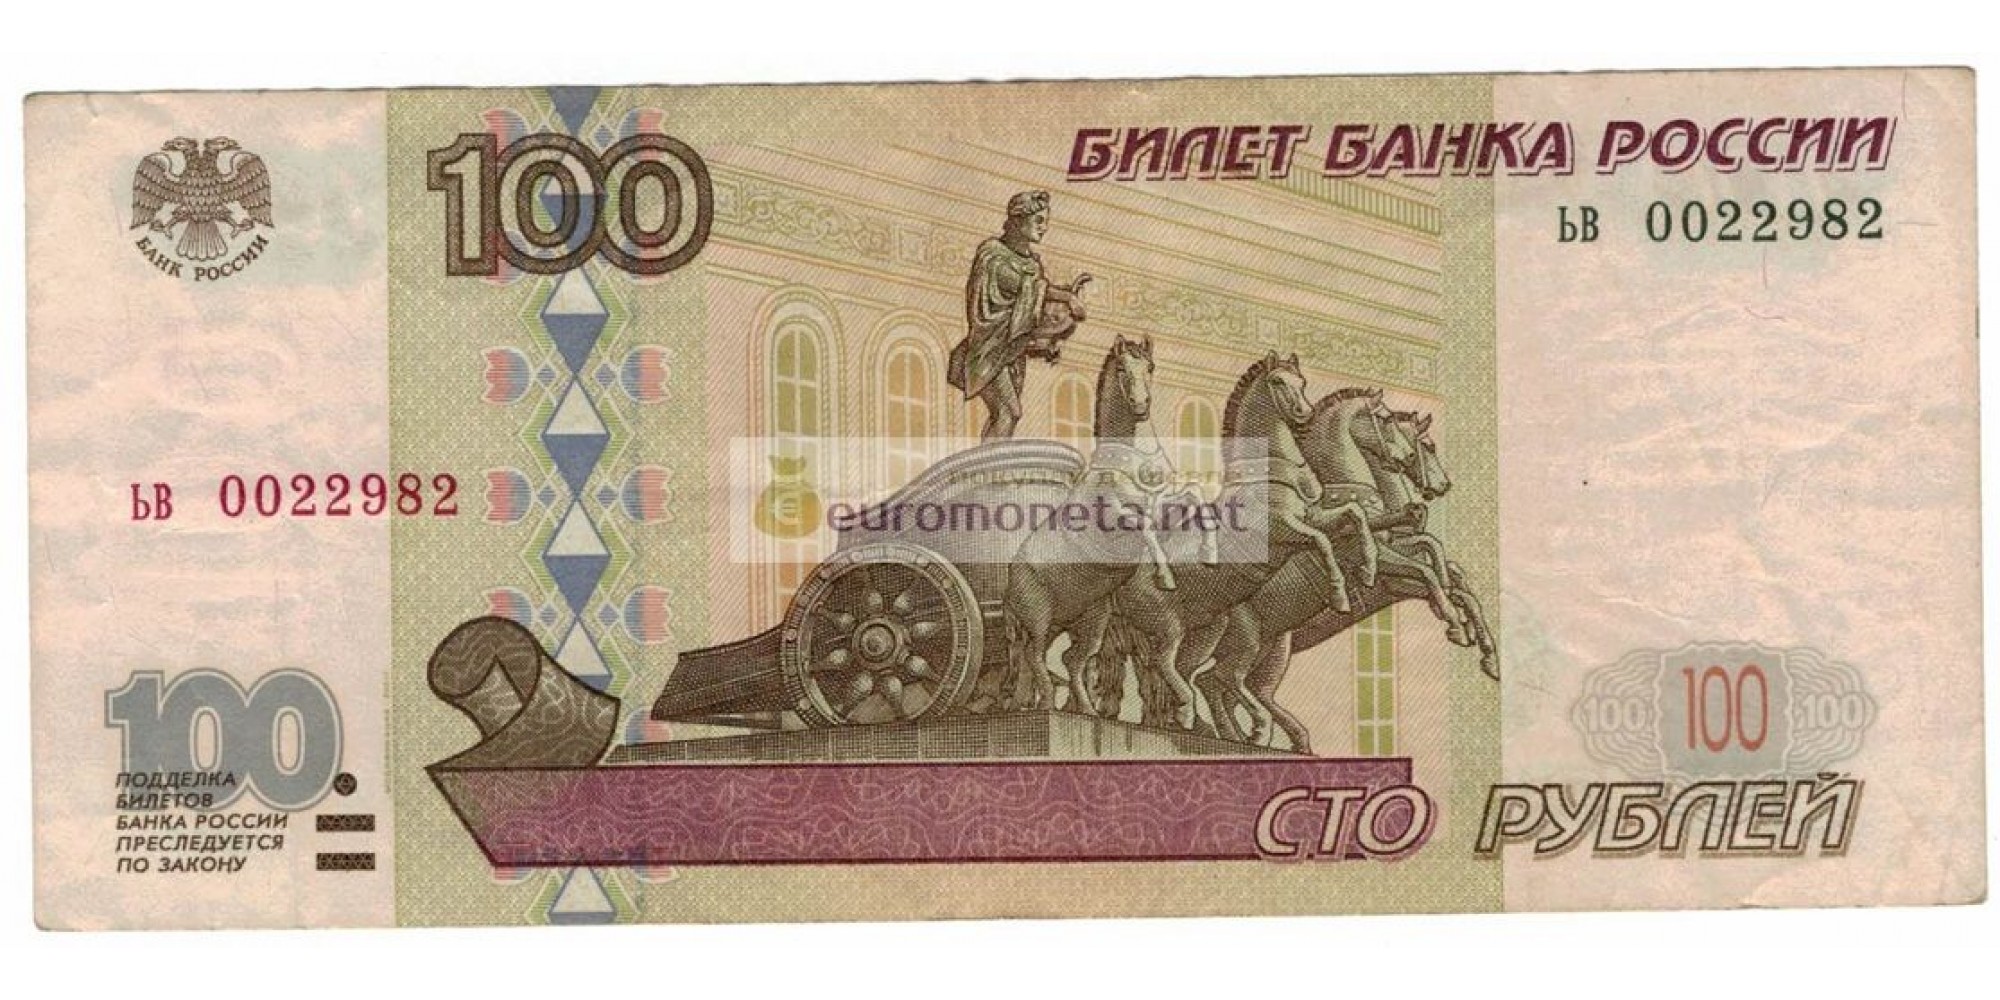 Россия 100 рублей 1997 год модификация 2001 год серия ьв 0022982